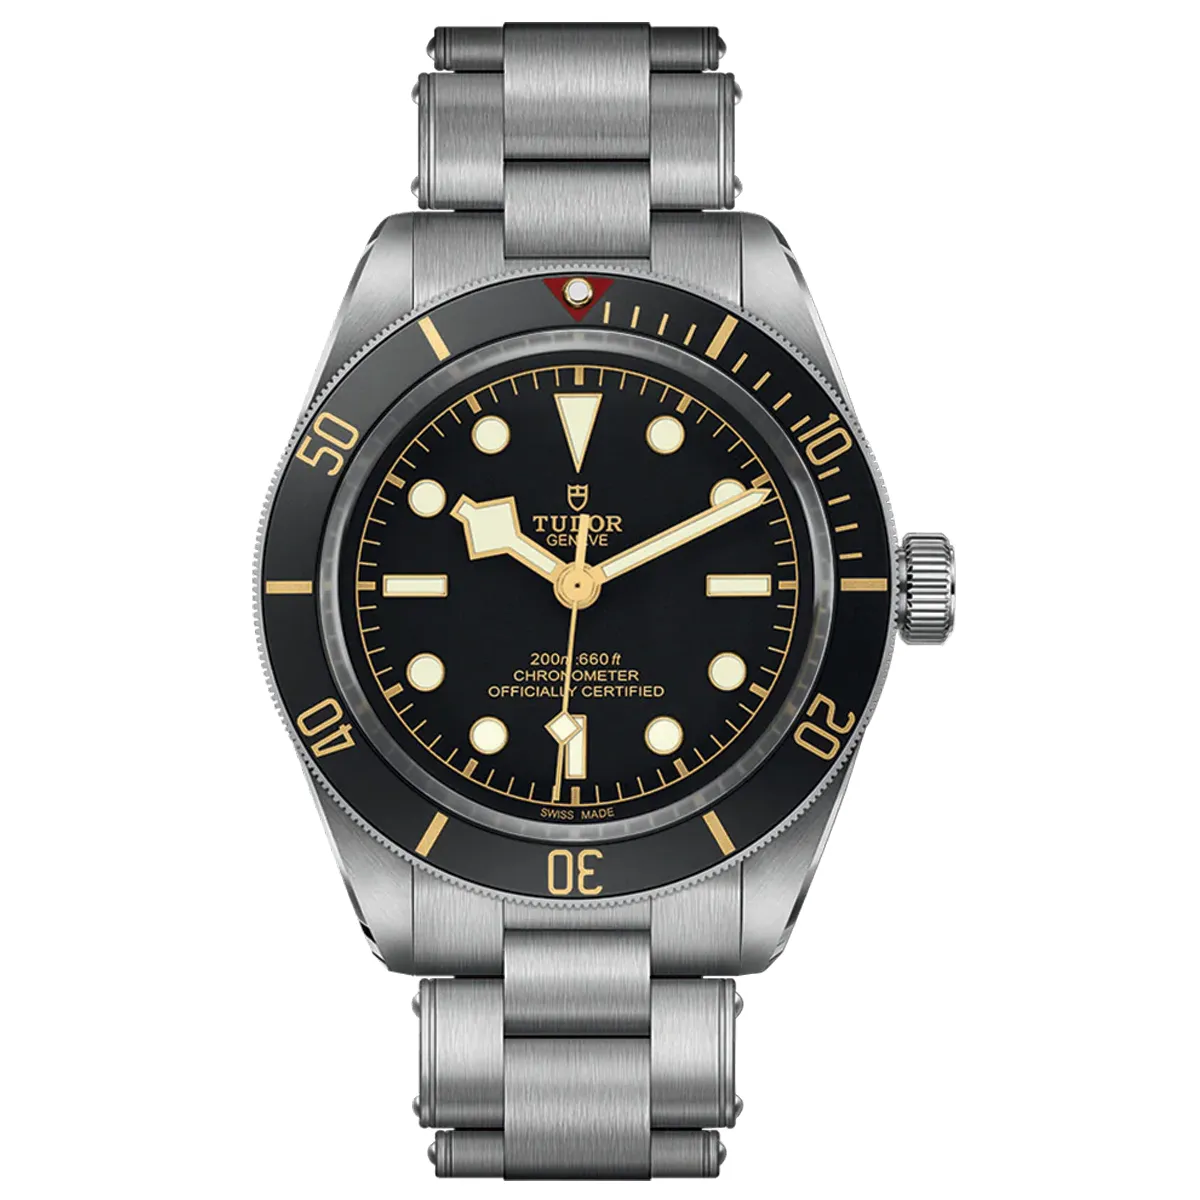 Đồng Hồ Tudor Black Bay 58 Chronometer M79030N-0001 mặt số màu đen. Dây đeo bằng thép. Thân vỏ bằng thép.